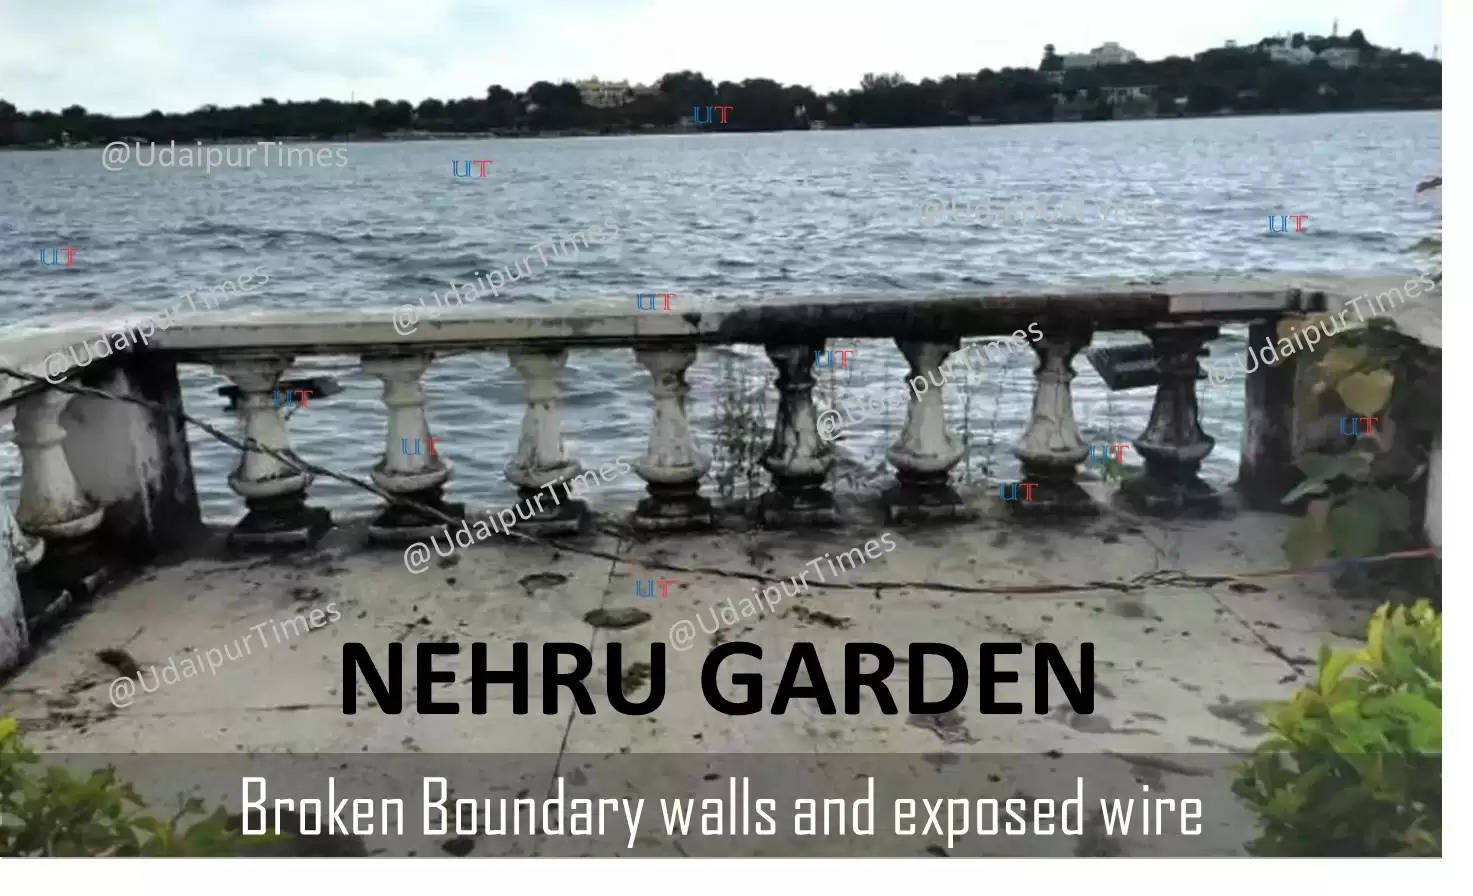 The sad condition of Nehru Garden in Udaipur